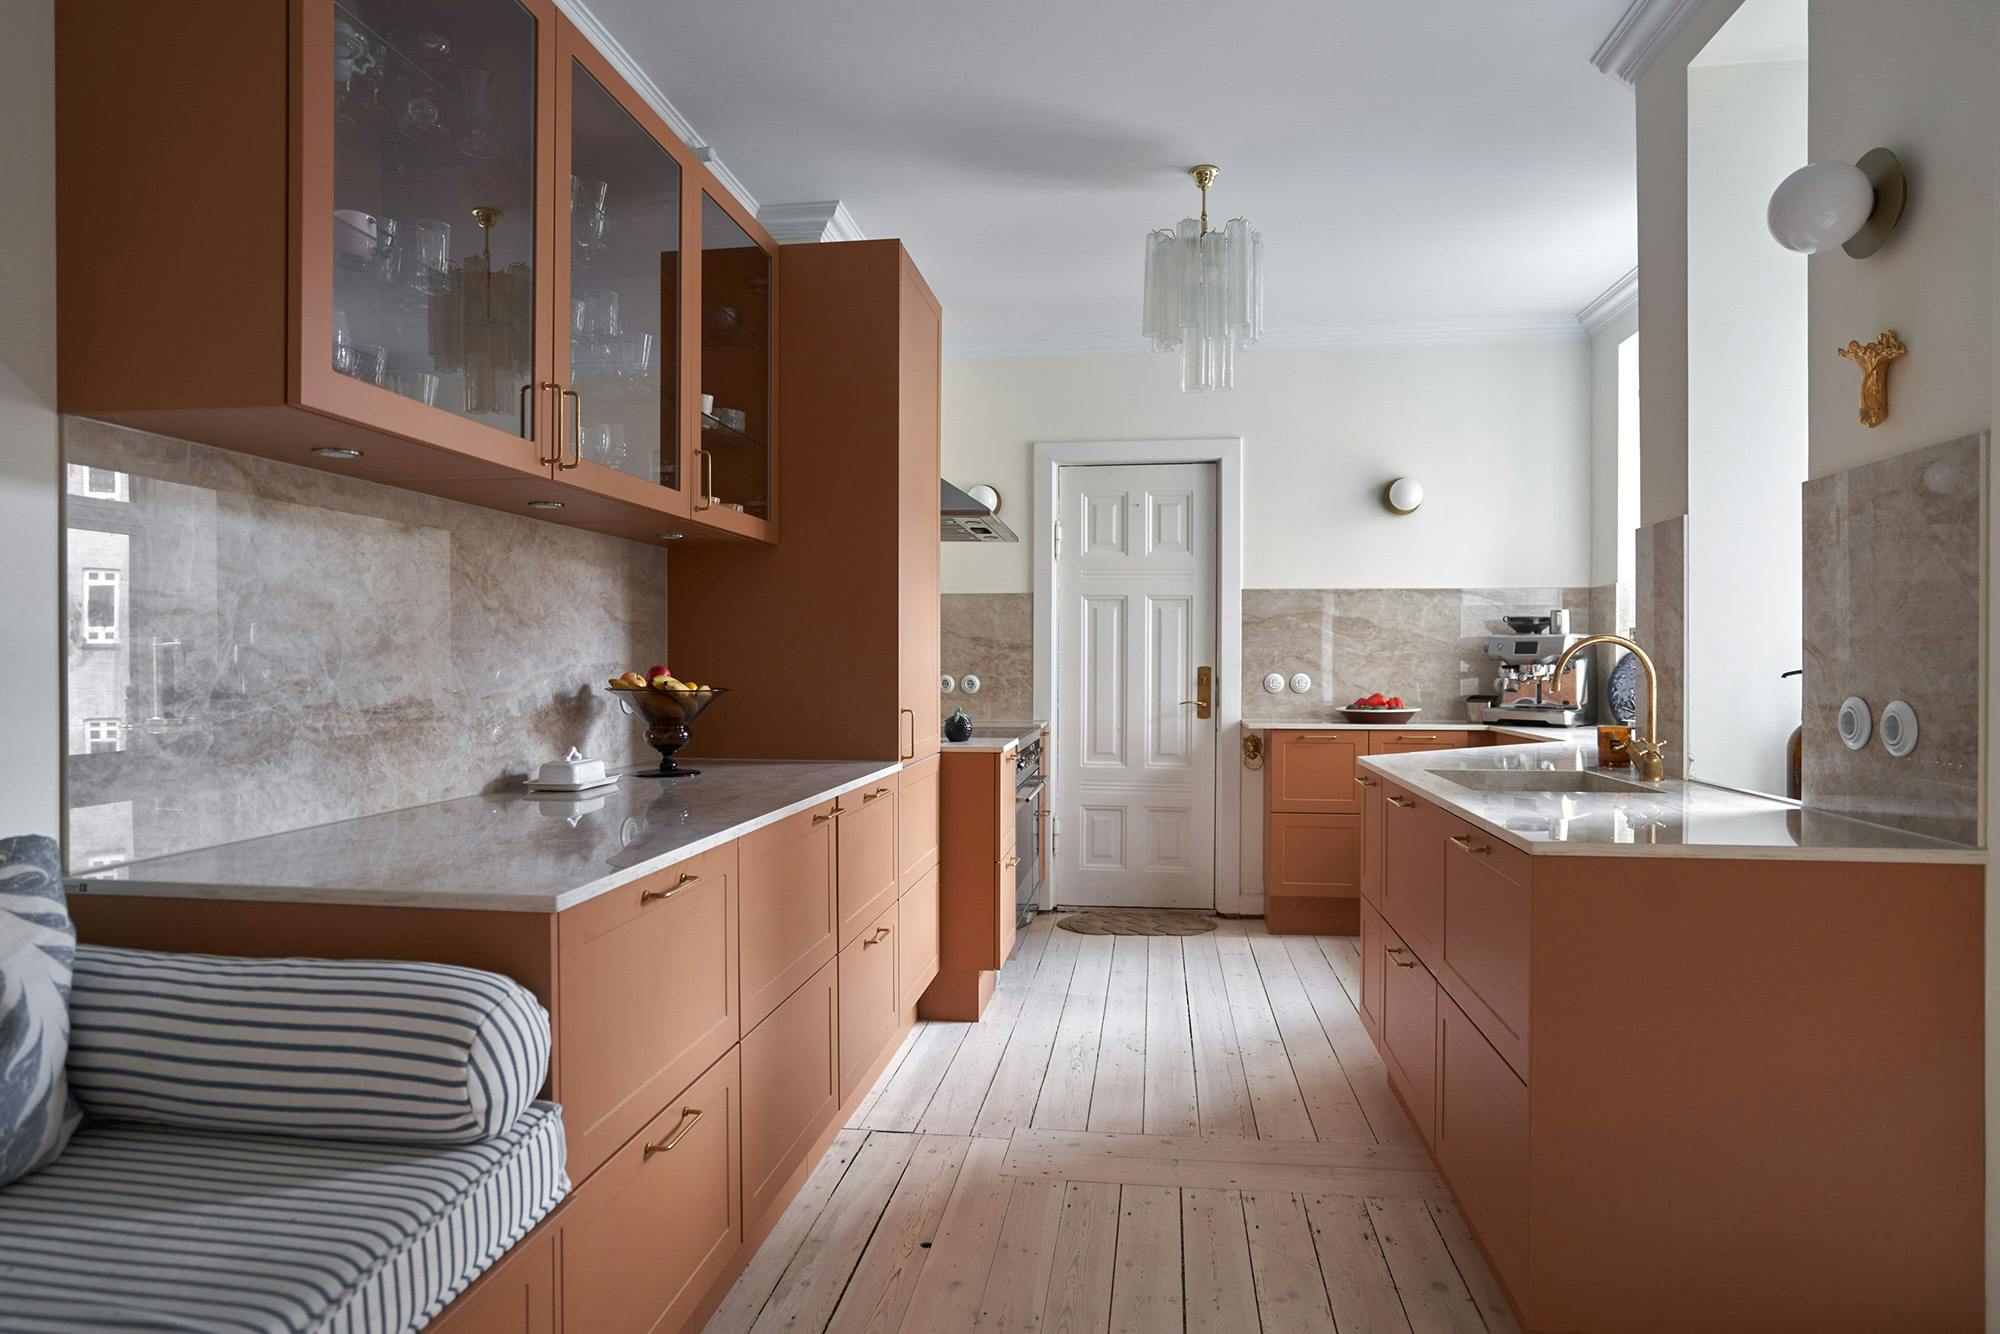 Numero immagine 44 della sezione corrente di Interior Designer Andrea Brodin’s Nordic HTH kitchen featuring Silestone Nolita di Cosentino Italia